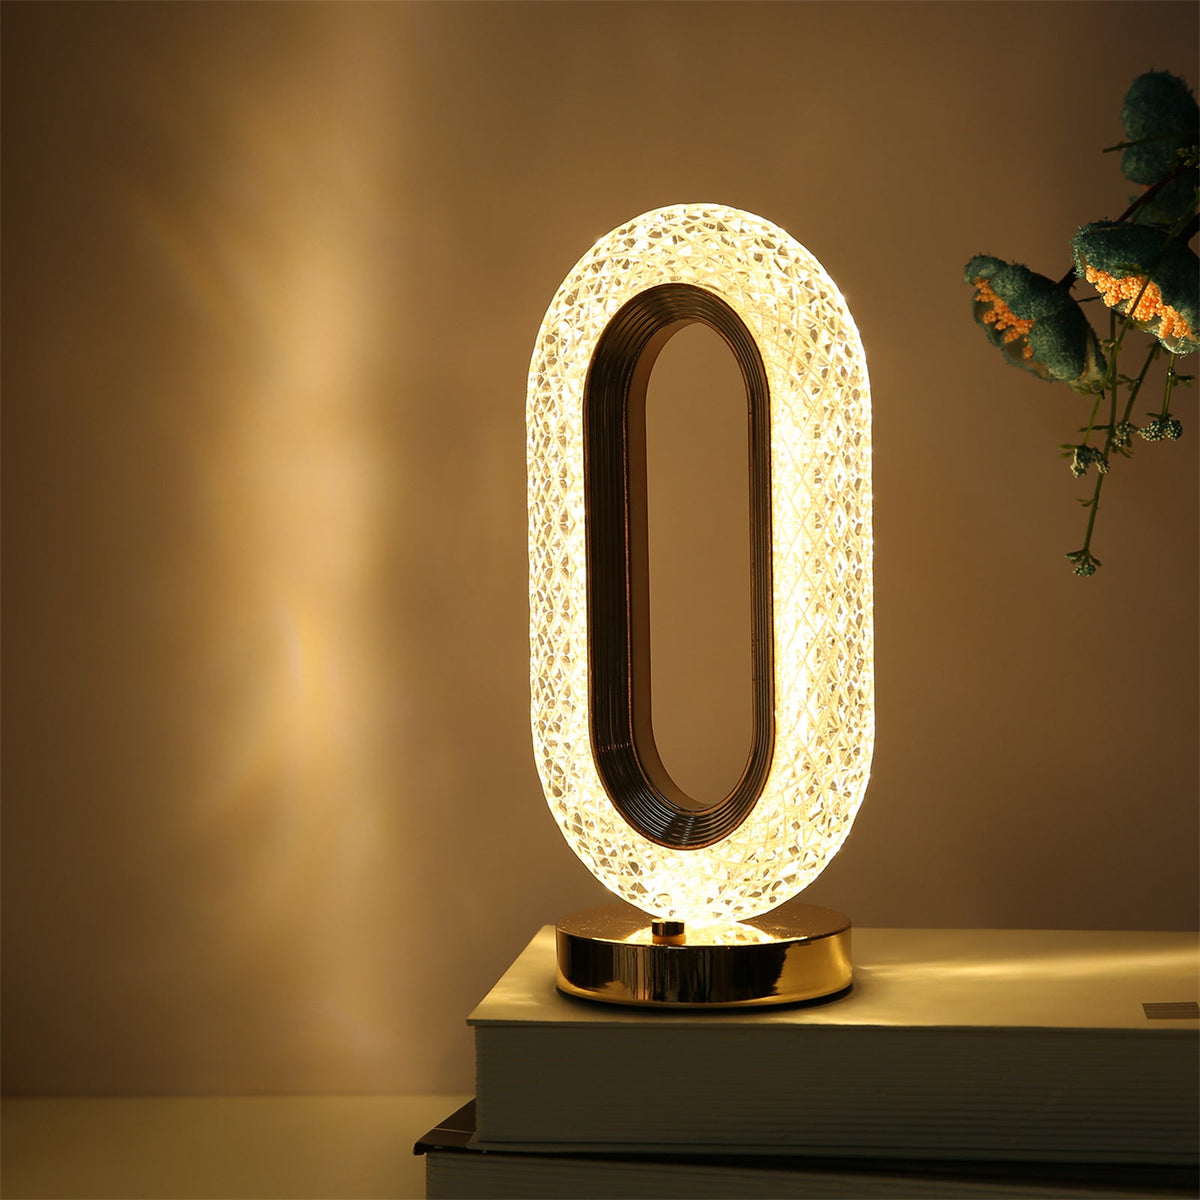 Lampa Diamond Crystal LED cu 3 temperaturi de culoare, alb rece, alb cald, neutru, culoare auriu